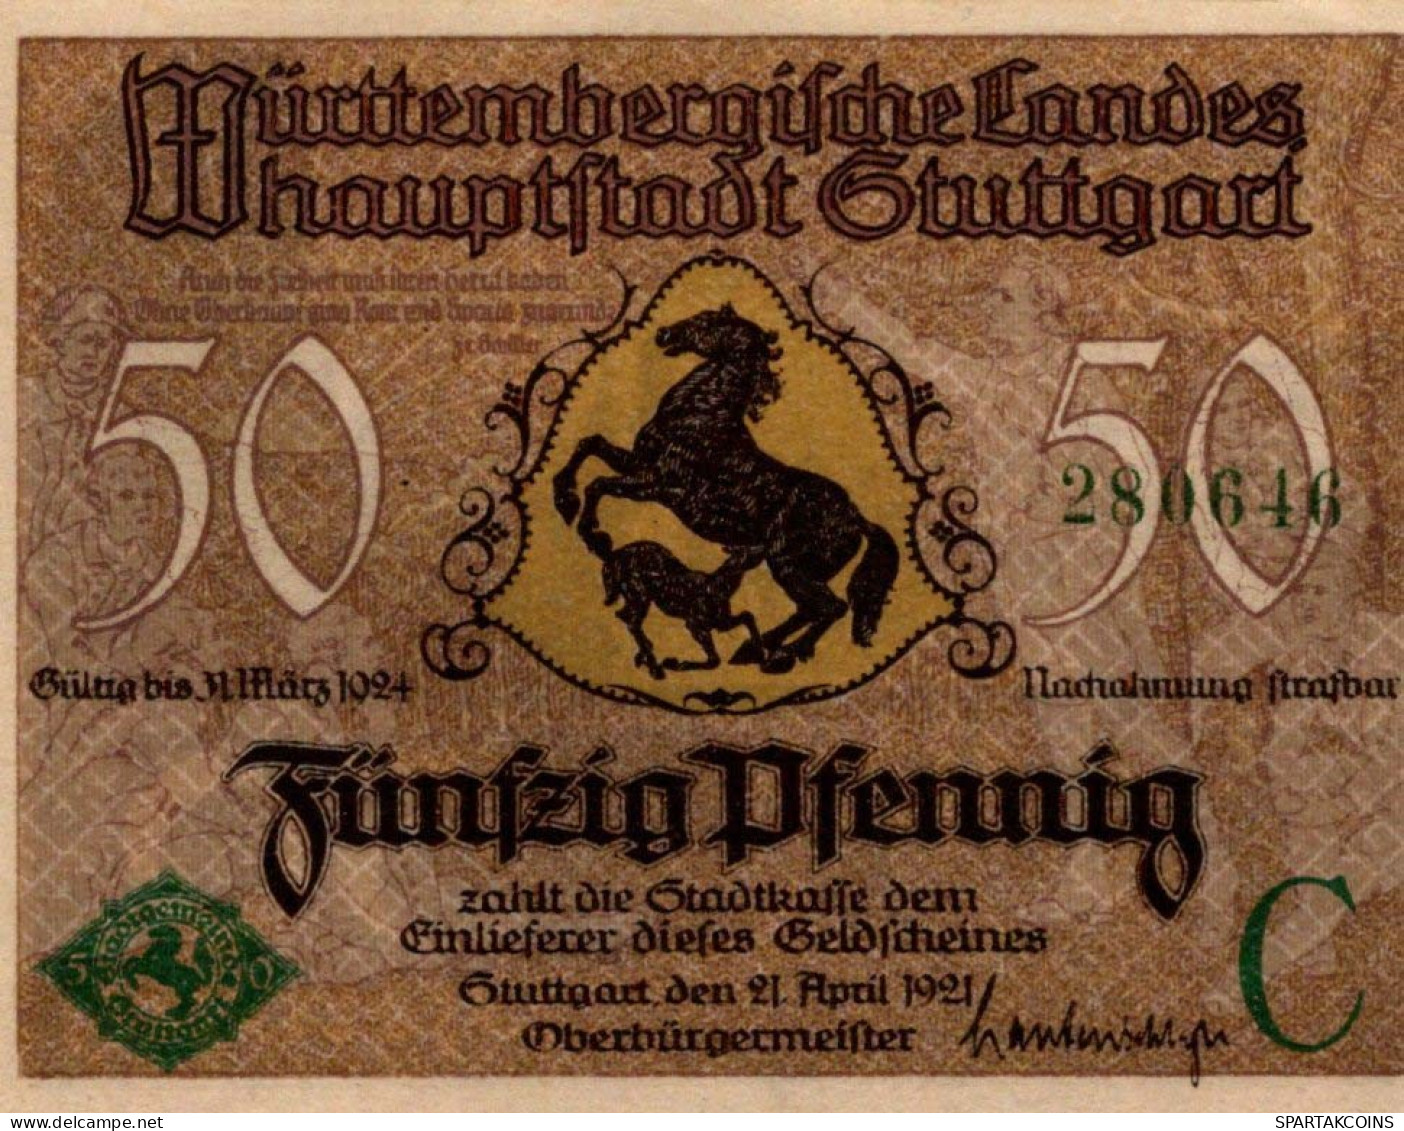 50 PFENNIG 1921 Stadt STUTTGART Württemberg UNC DEUTSCHLAND Notgeld #PC438 - [11] Emisiones Locales